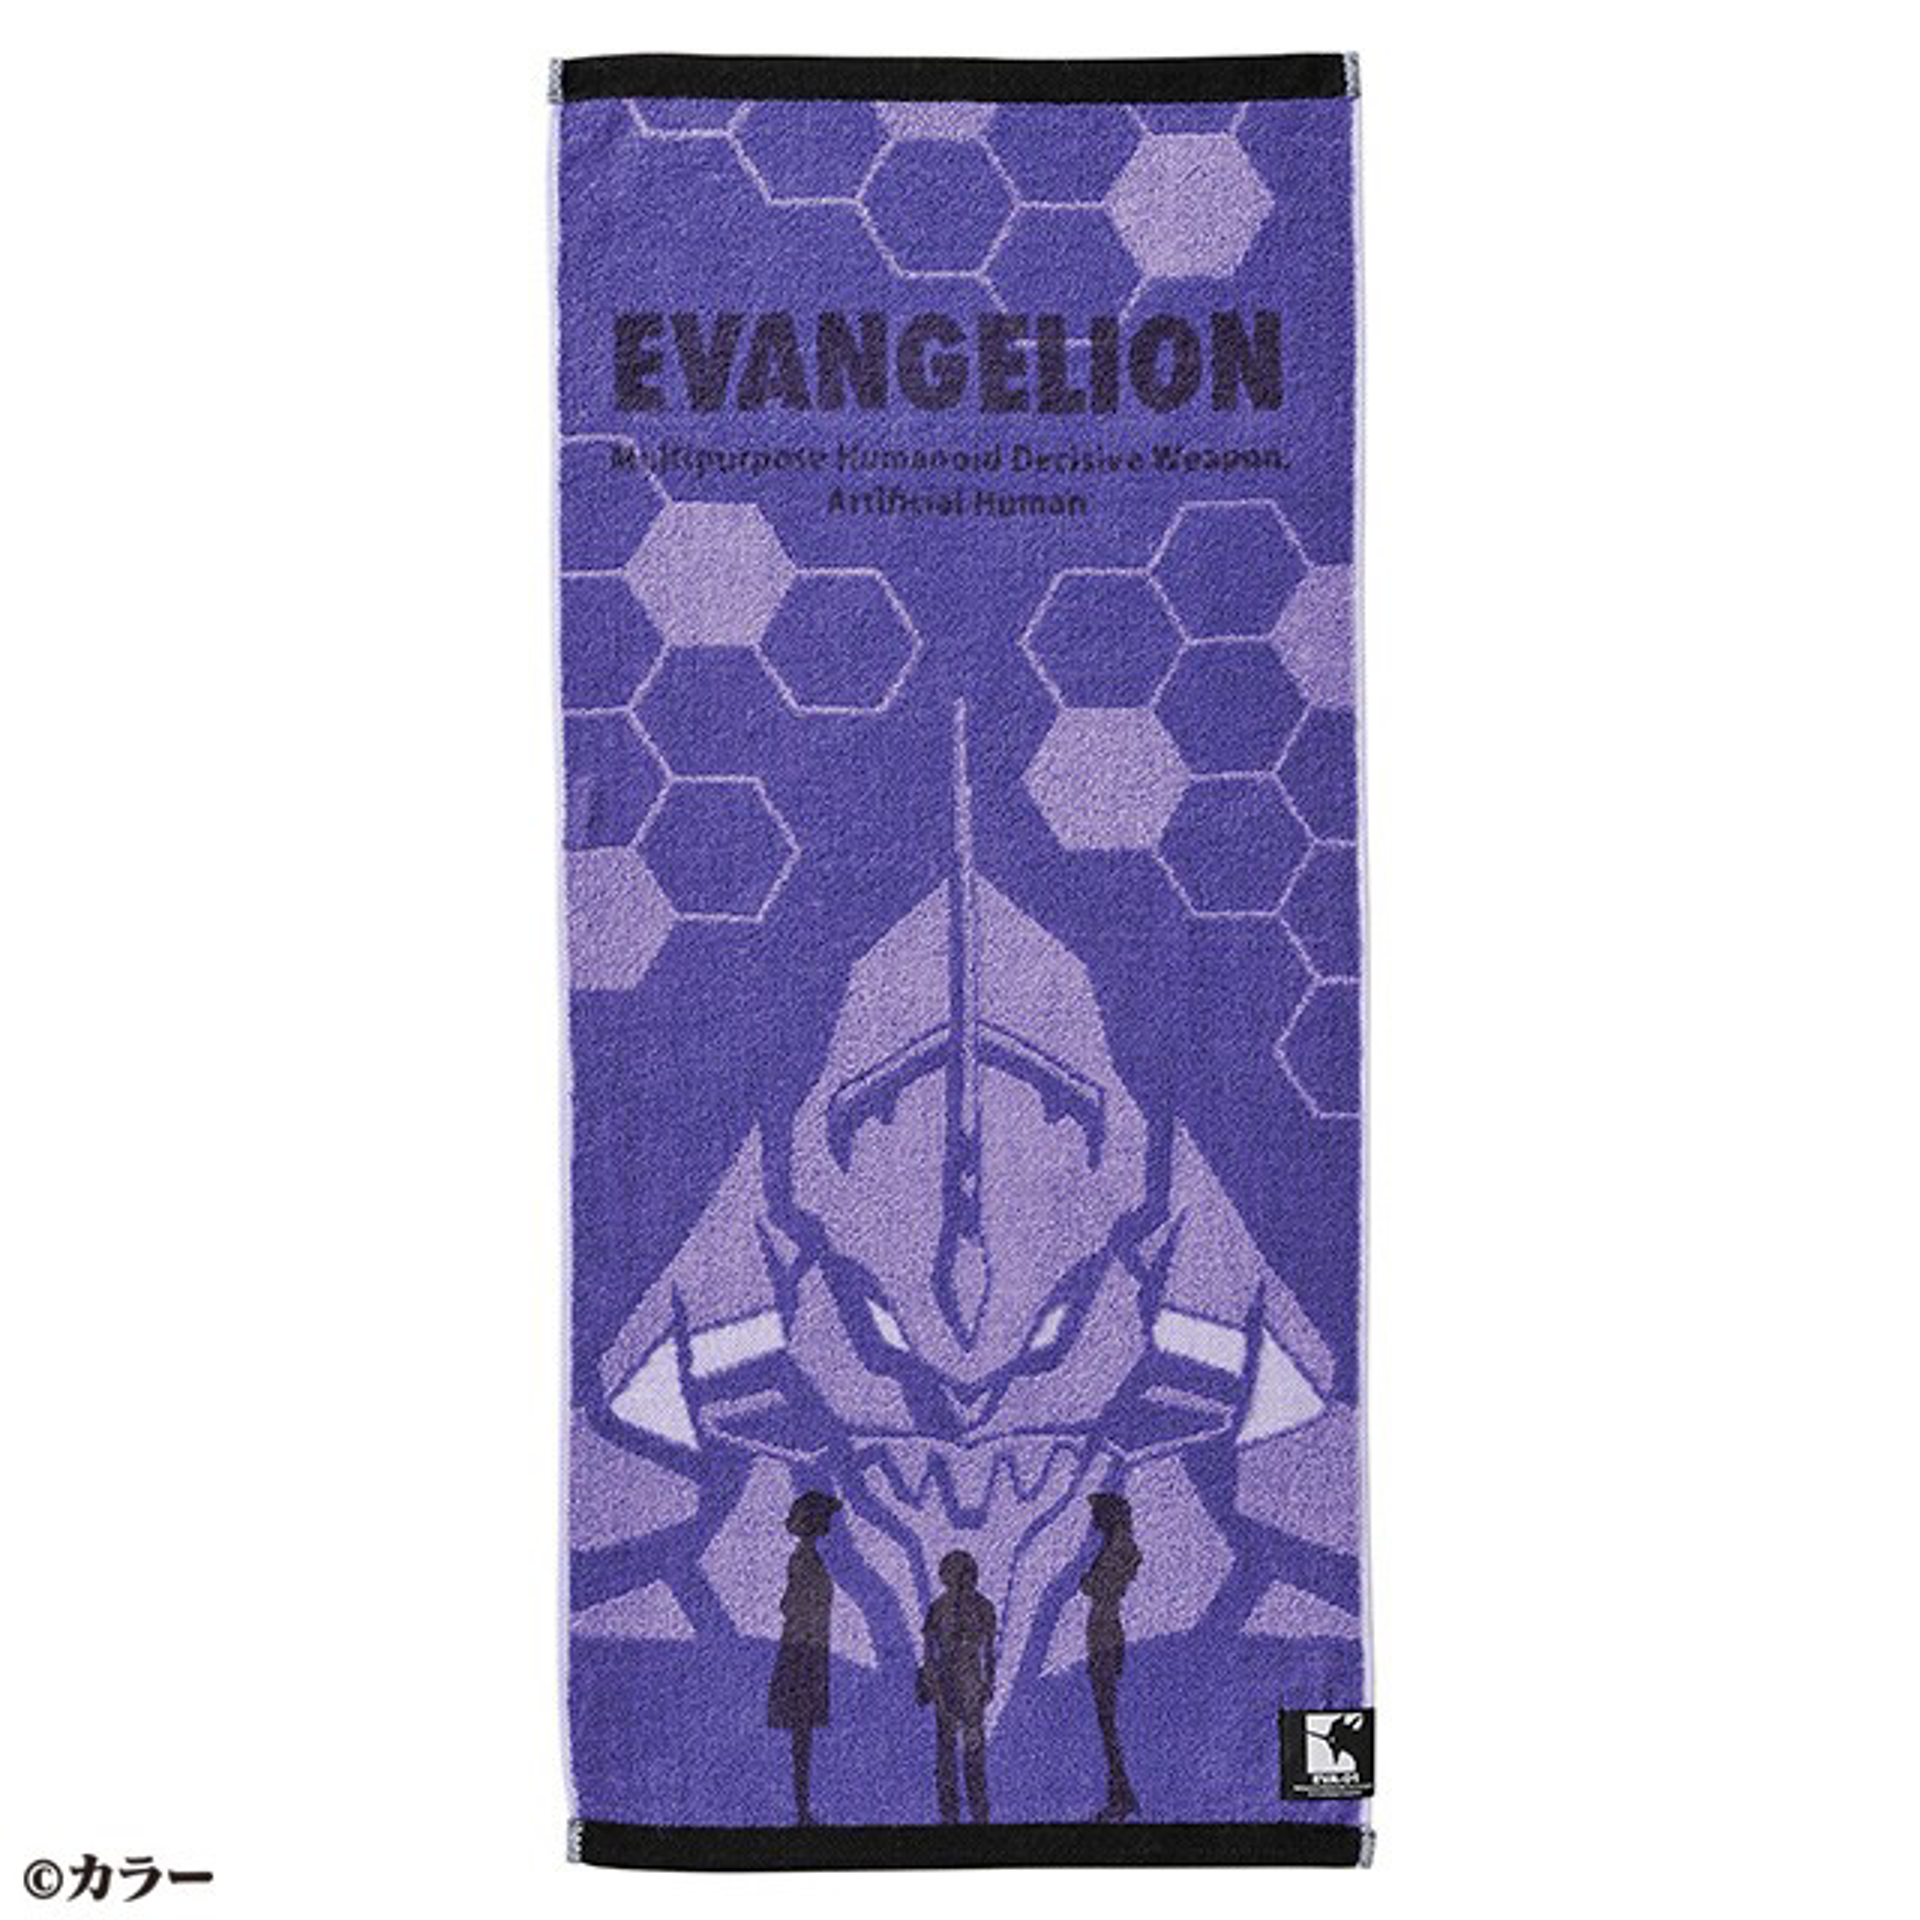 Evangelion - Serviette Premier envol 34x80cm